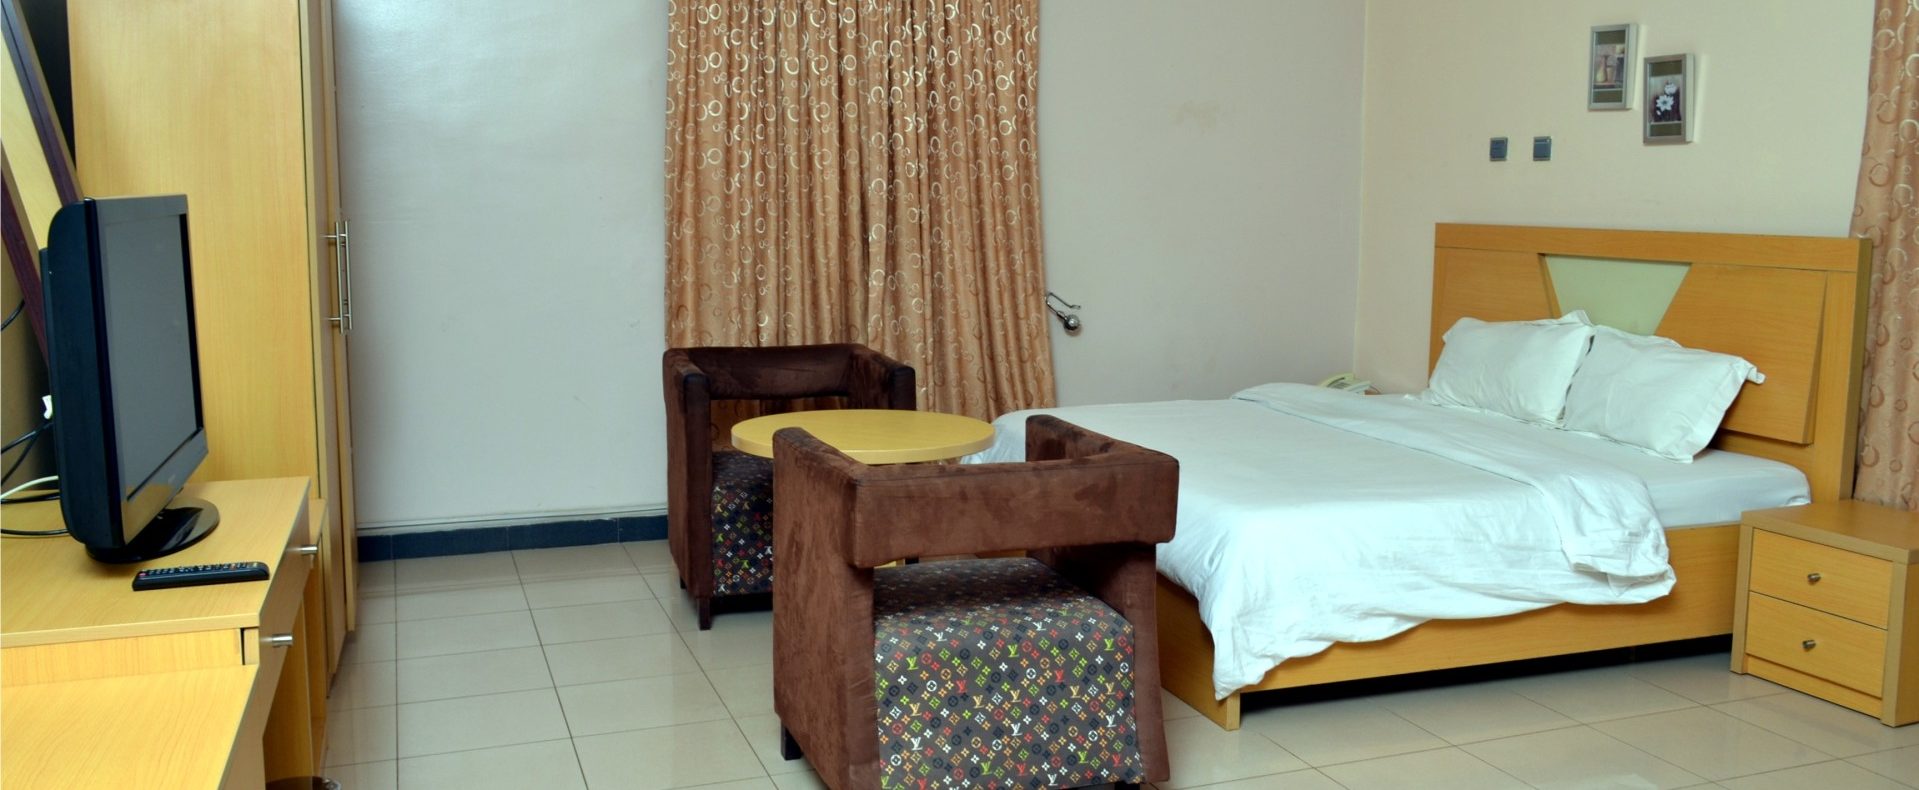 Hotel Bondi Room In Abuja Fct Nigeria